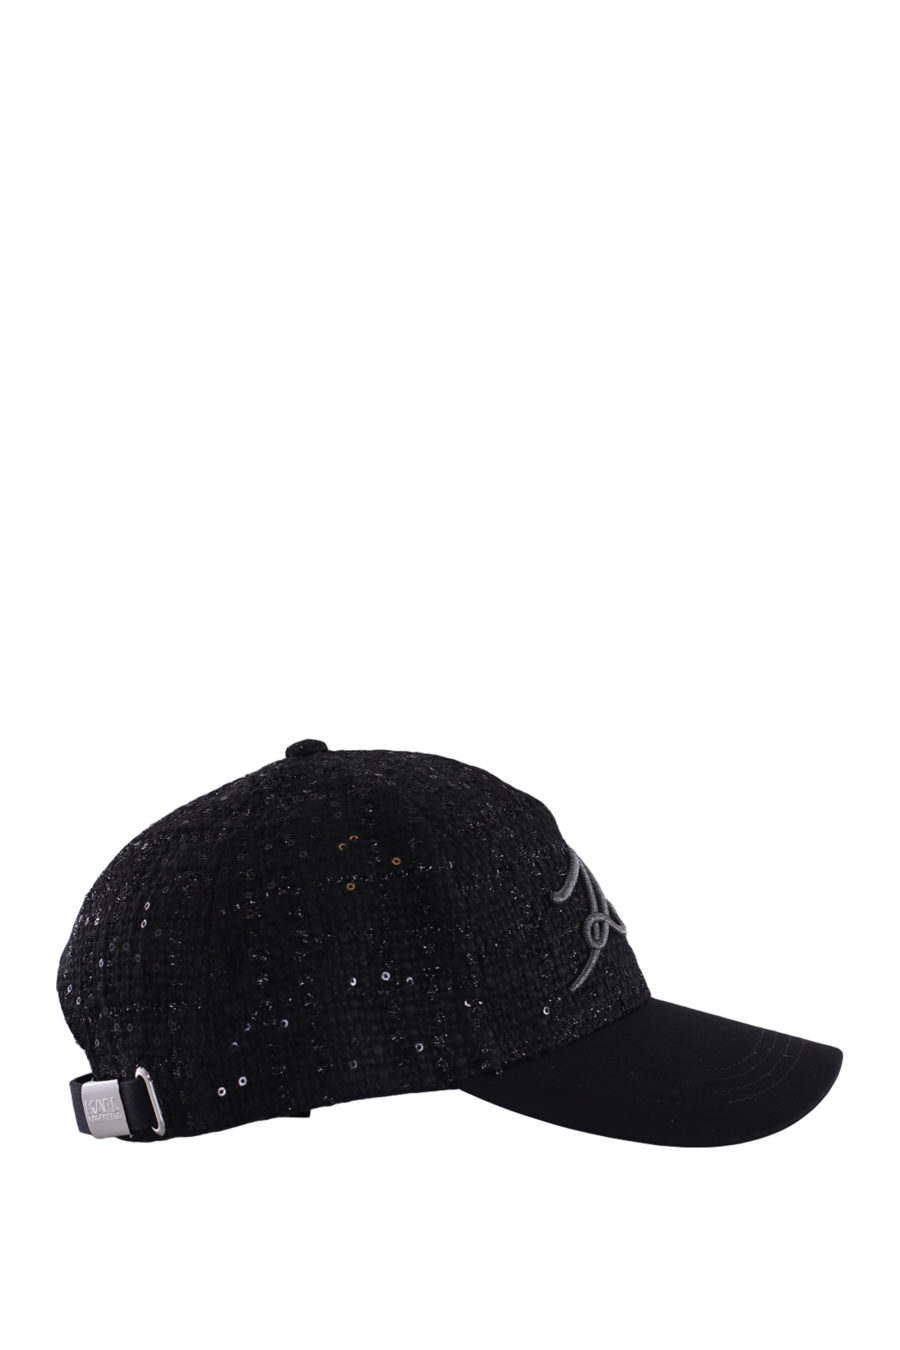 Gorra negra con pin de la marca - IMG 0206